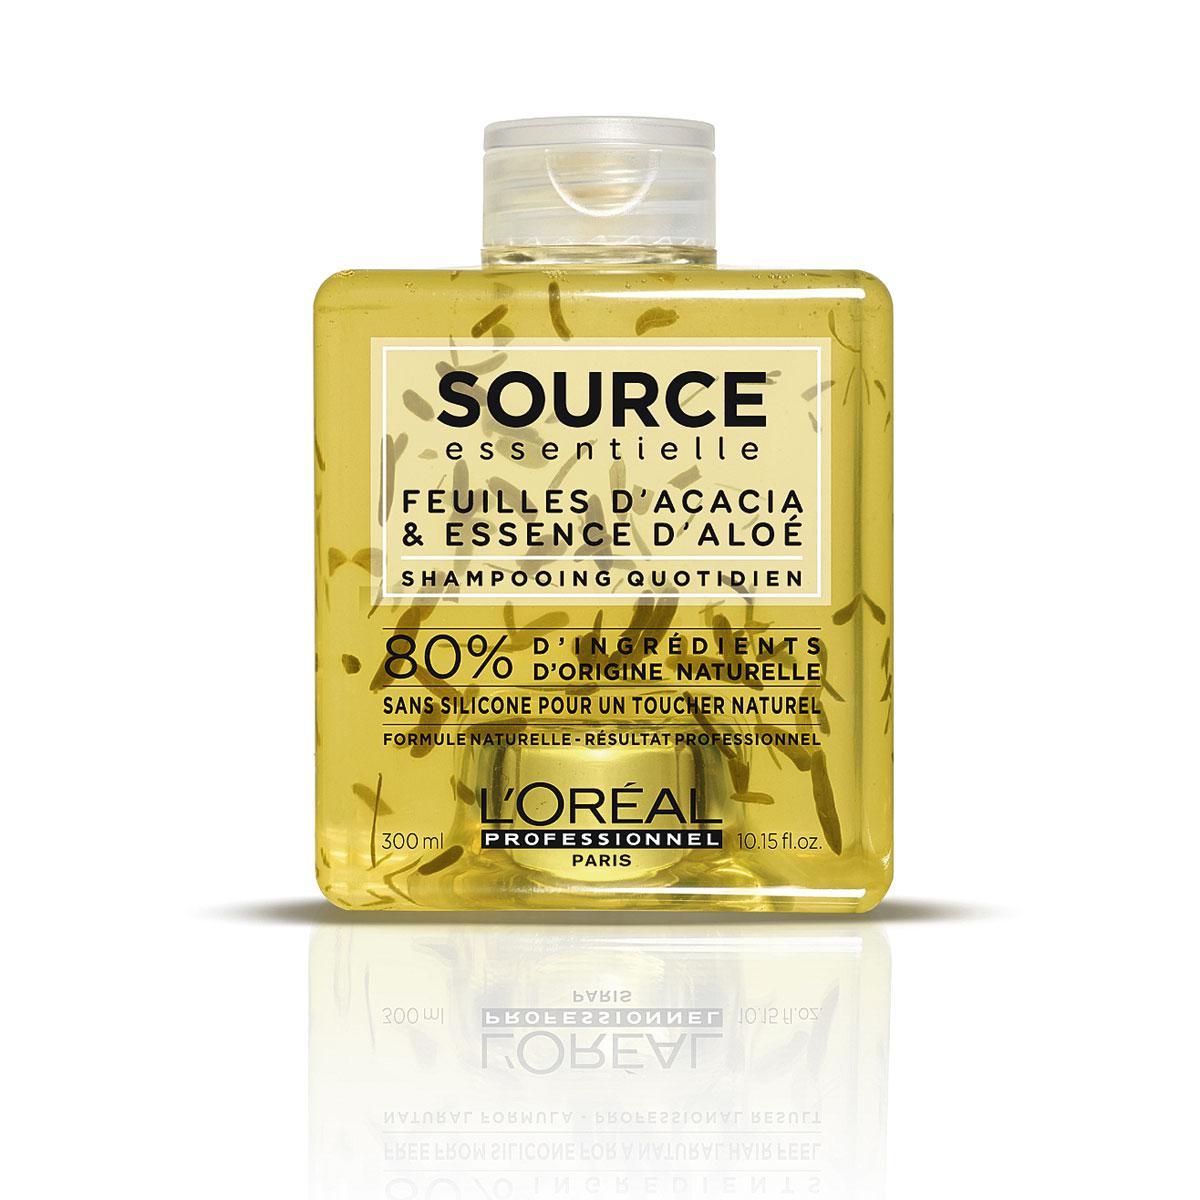 Source Essentielle, met 80 tot 100% natuurlijke ingrediënten, is het favoriete navulgamma van kappers. Daily Shampoo van L'Oréal Professionnel, 21,93 euro, vier productlijnen.